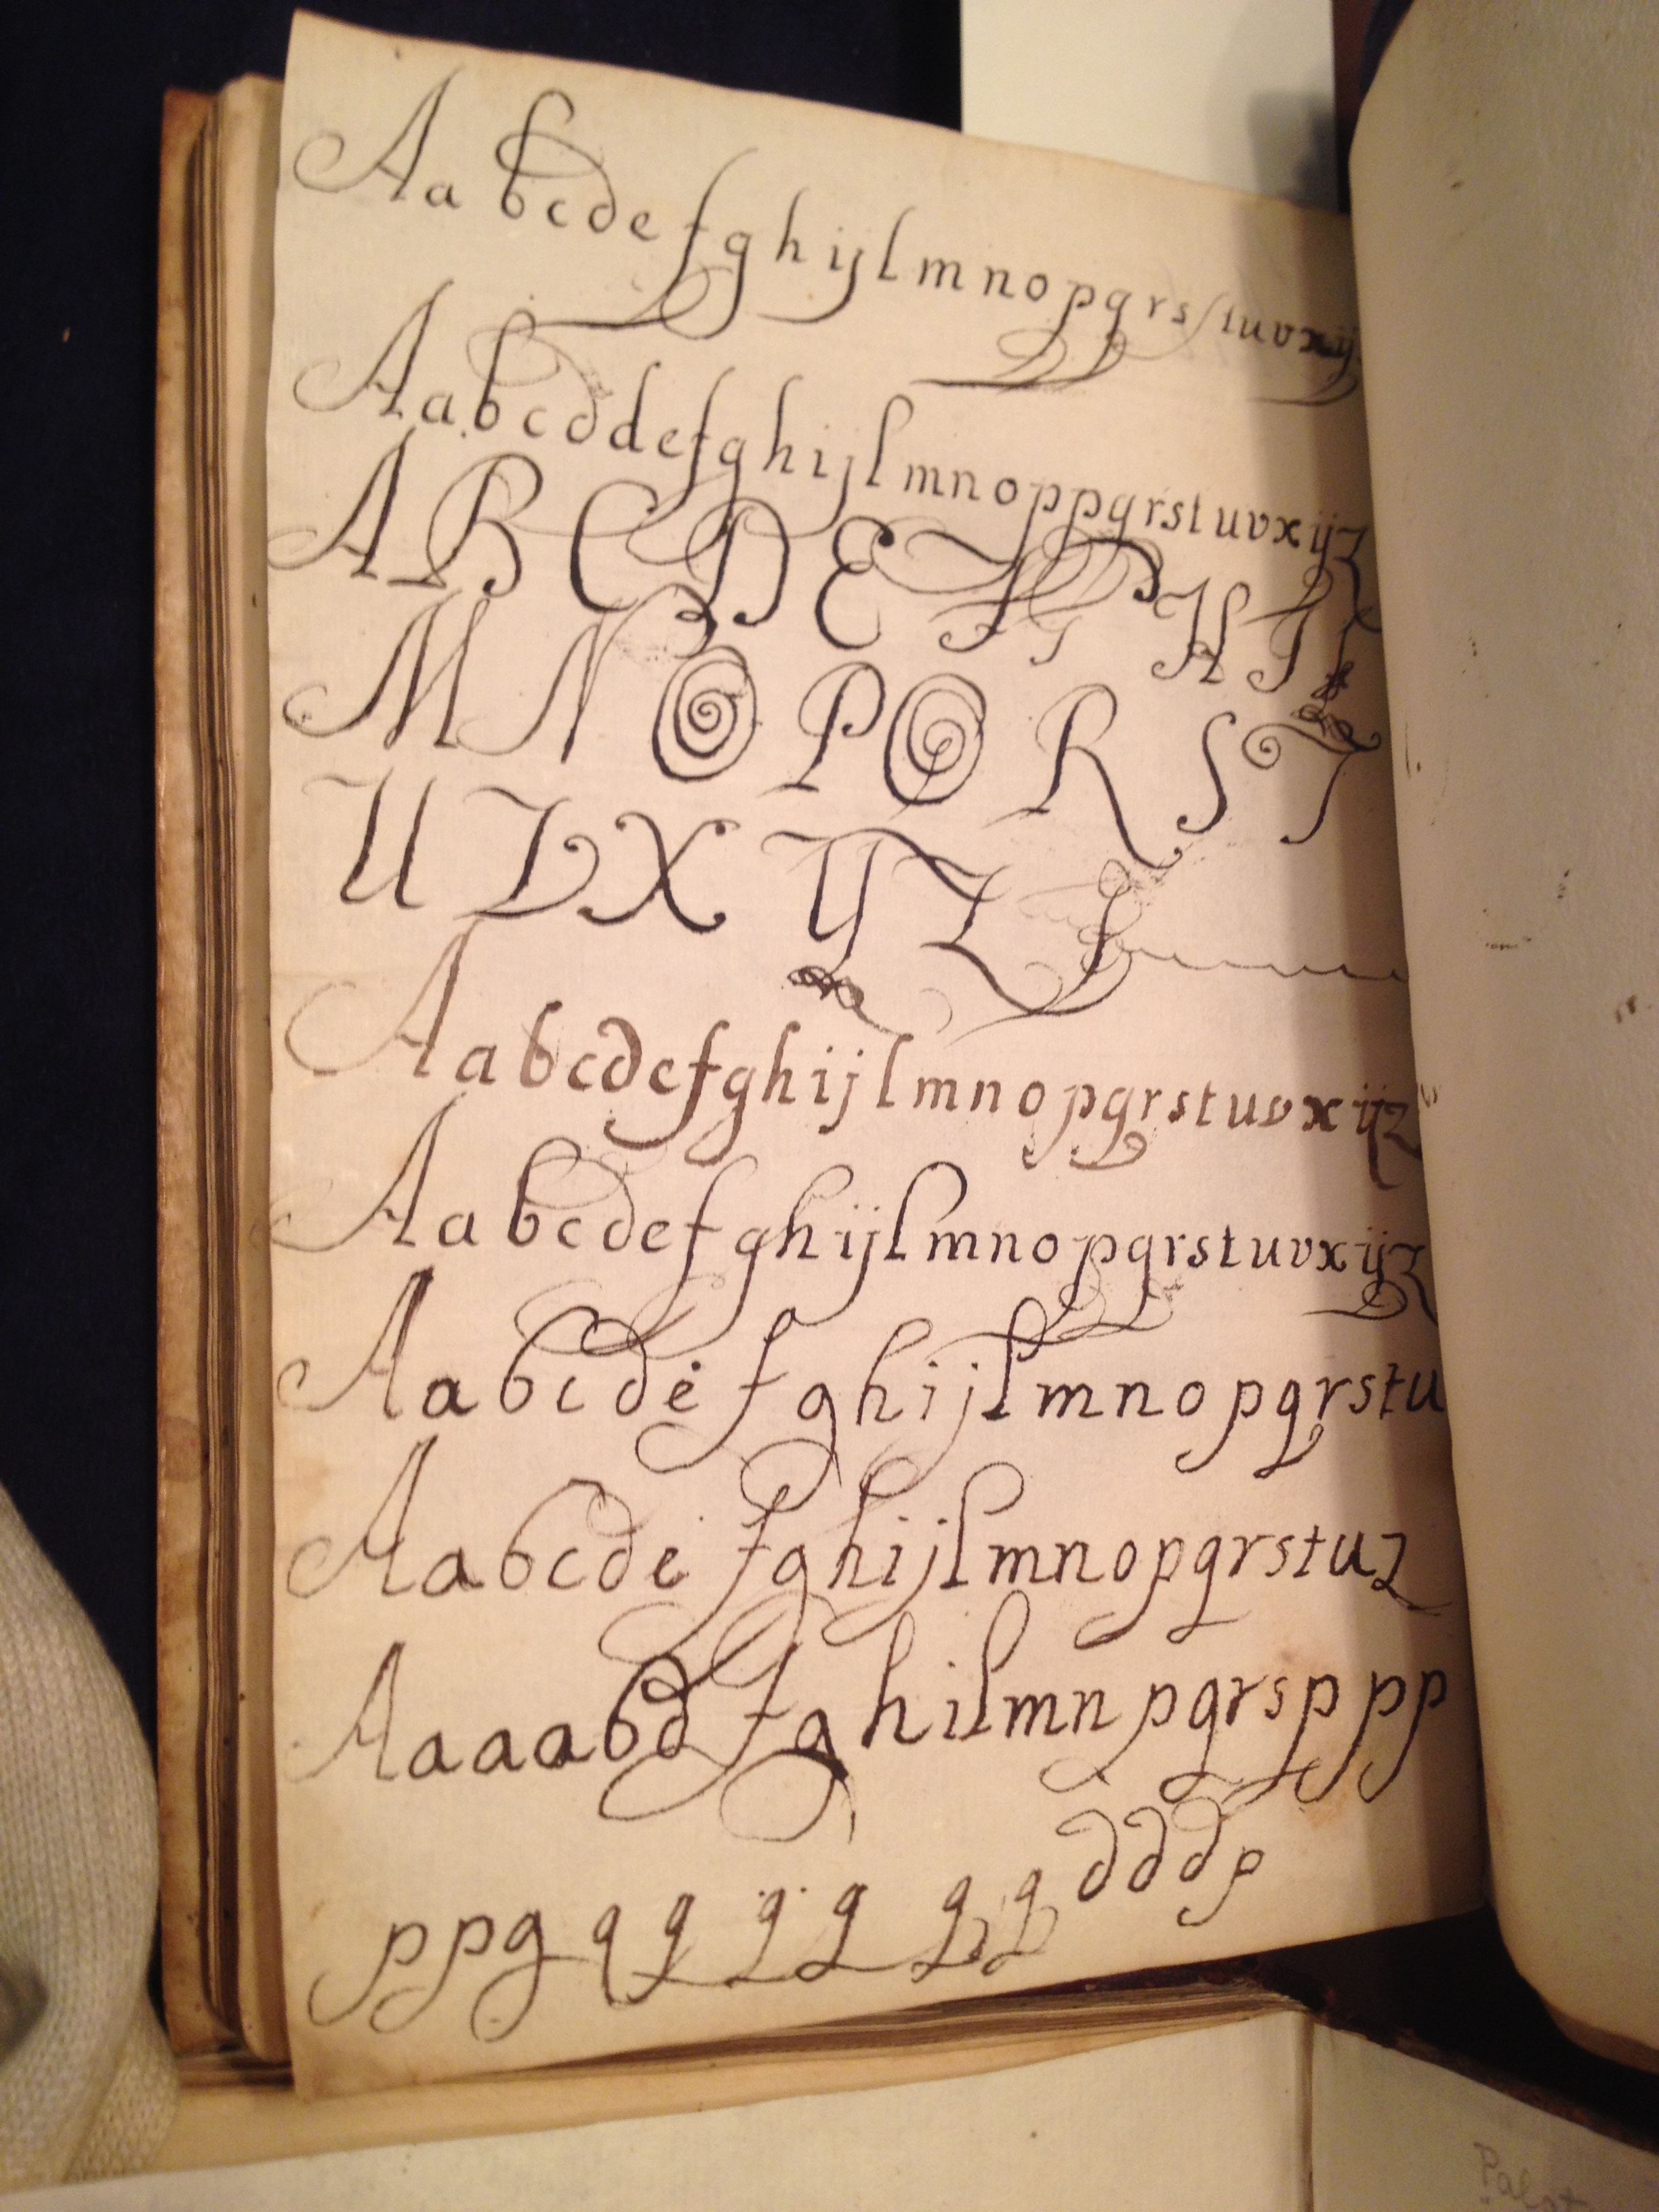 Practice lettering Palatino Libro nuovo d’imparare a scrivere Z43.A3 P3 1545 Fabyan